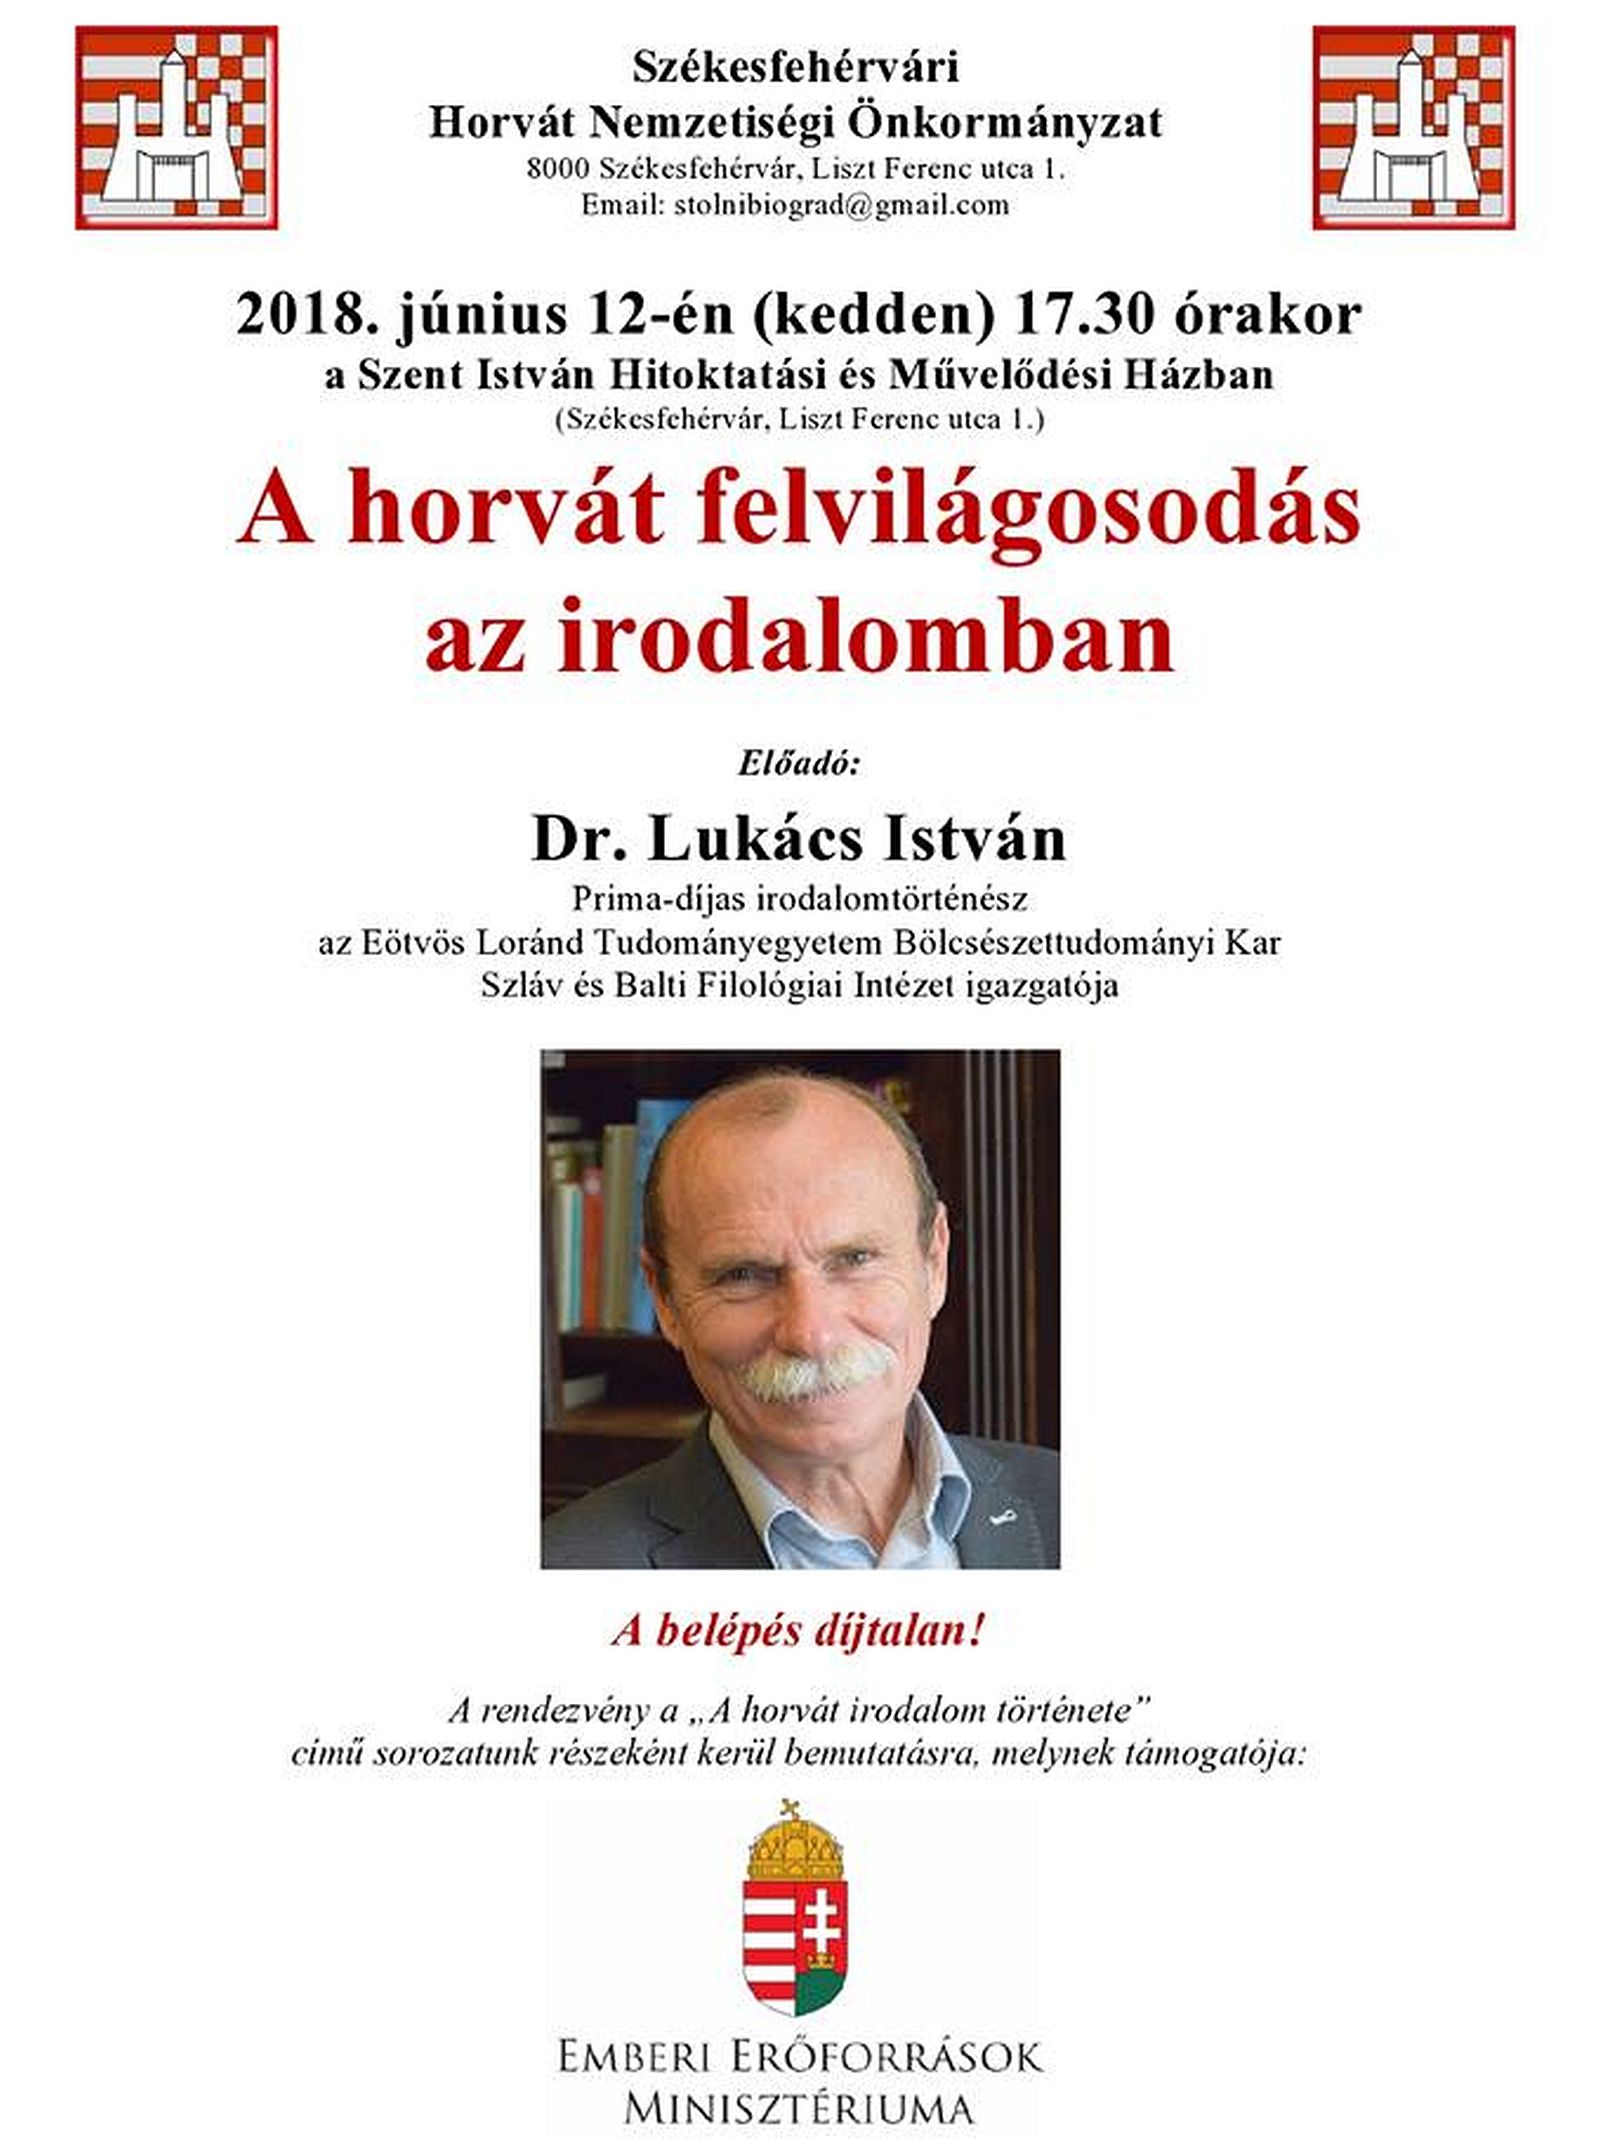 „A horvát felvilágosodás az irodalomban” - Dr. Lukács István előadása kedden